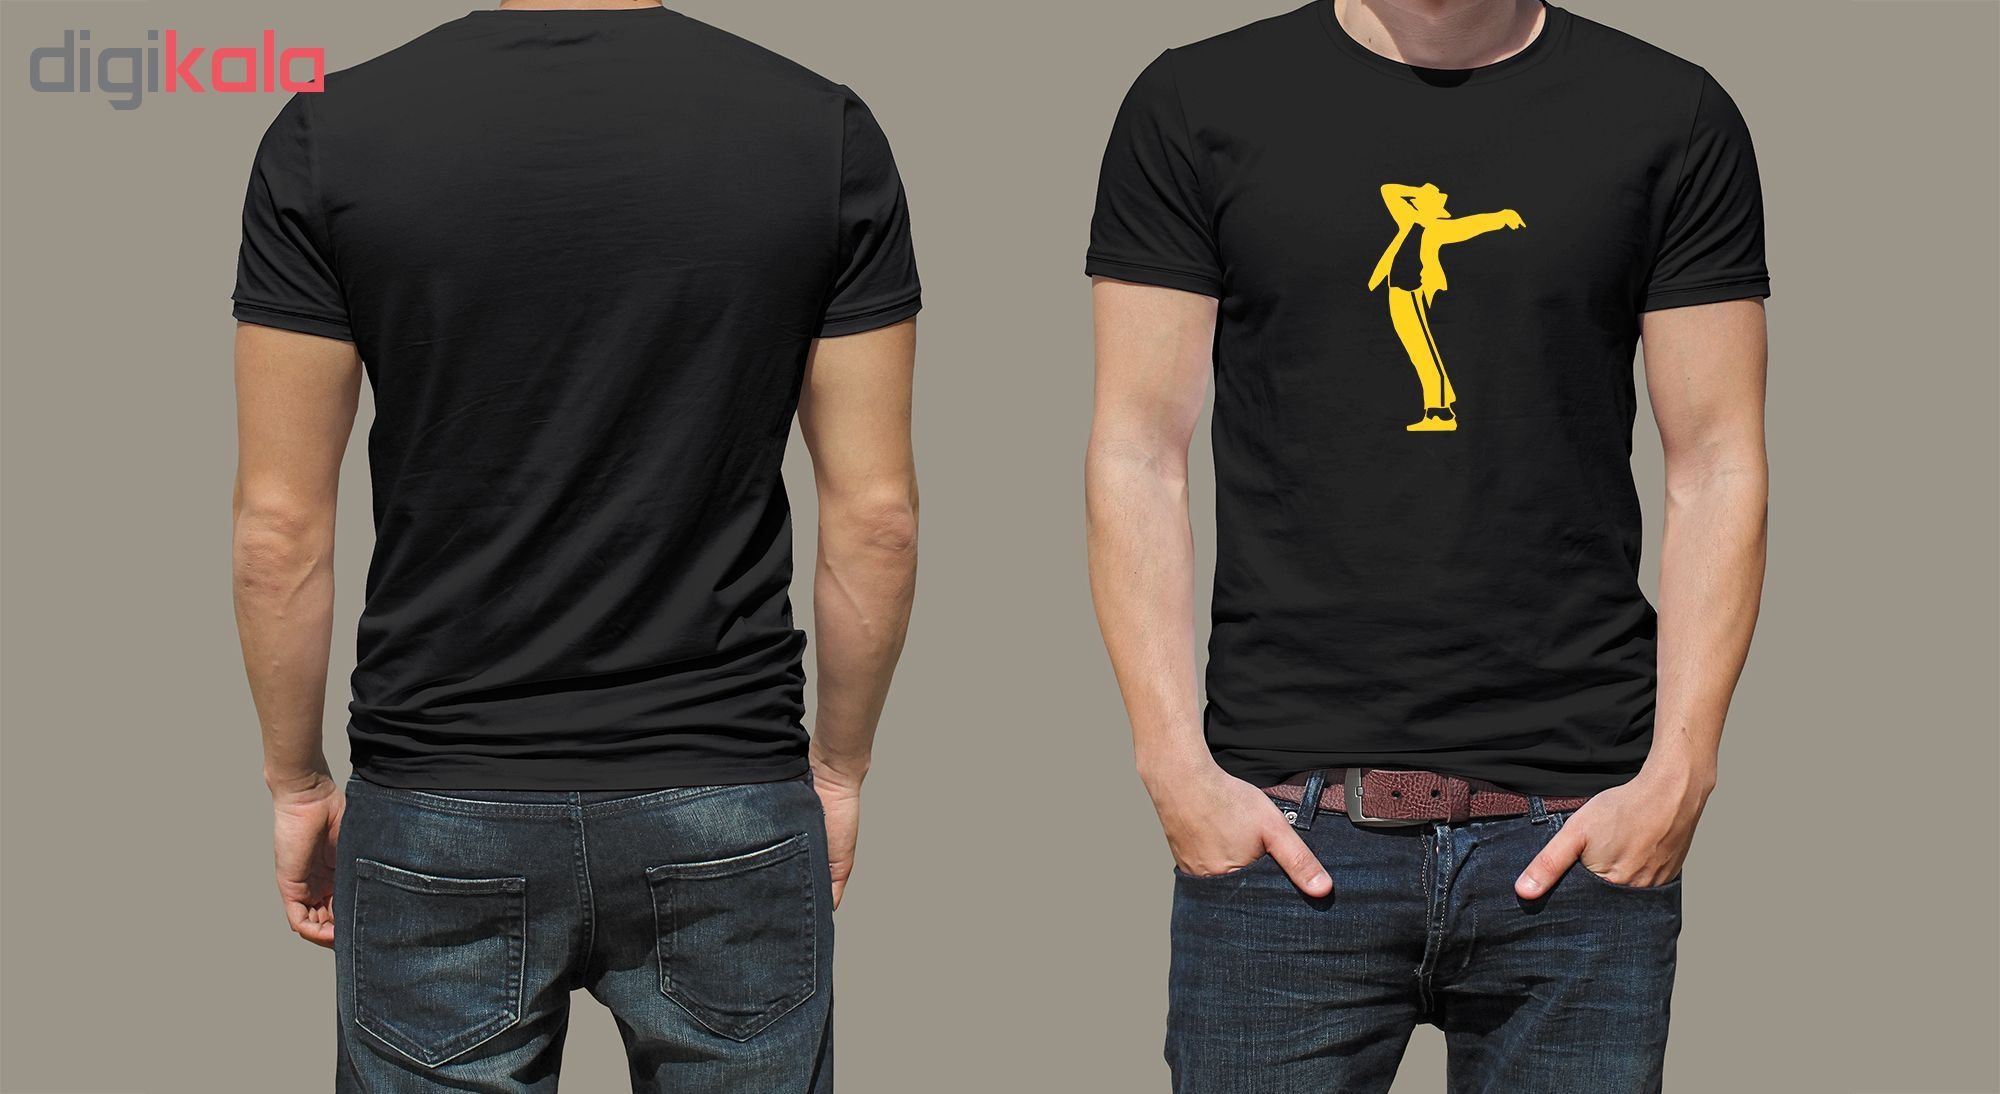 تی شرت مردانه طرح مایکل جکسون کد wz93